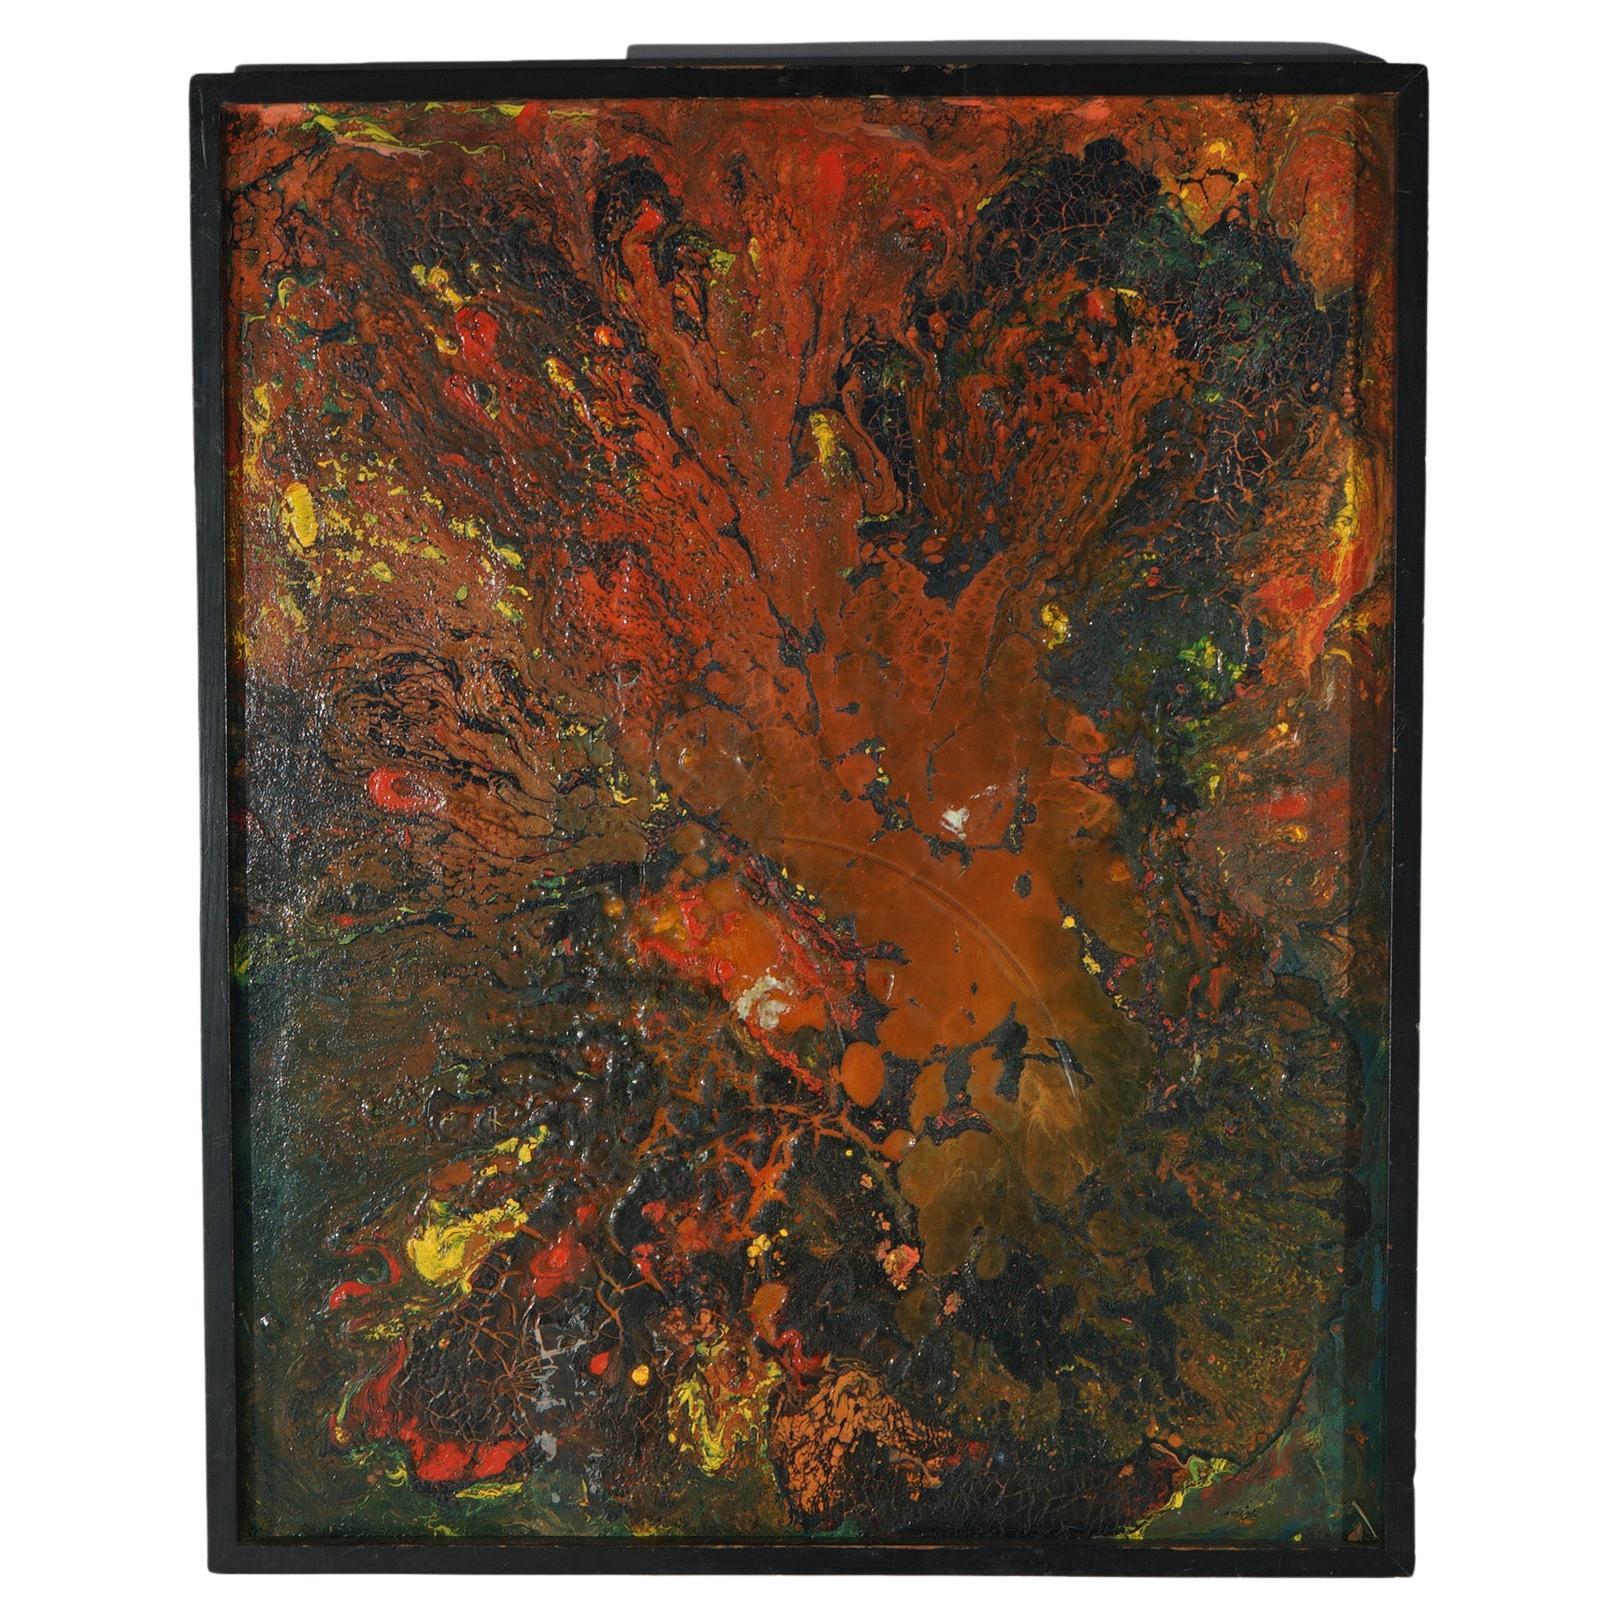 Peinture abstraite à l'huile sur toile de Beverly Goldman du 20e siècle The Moderns